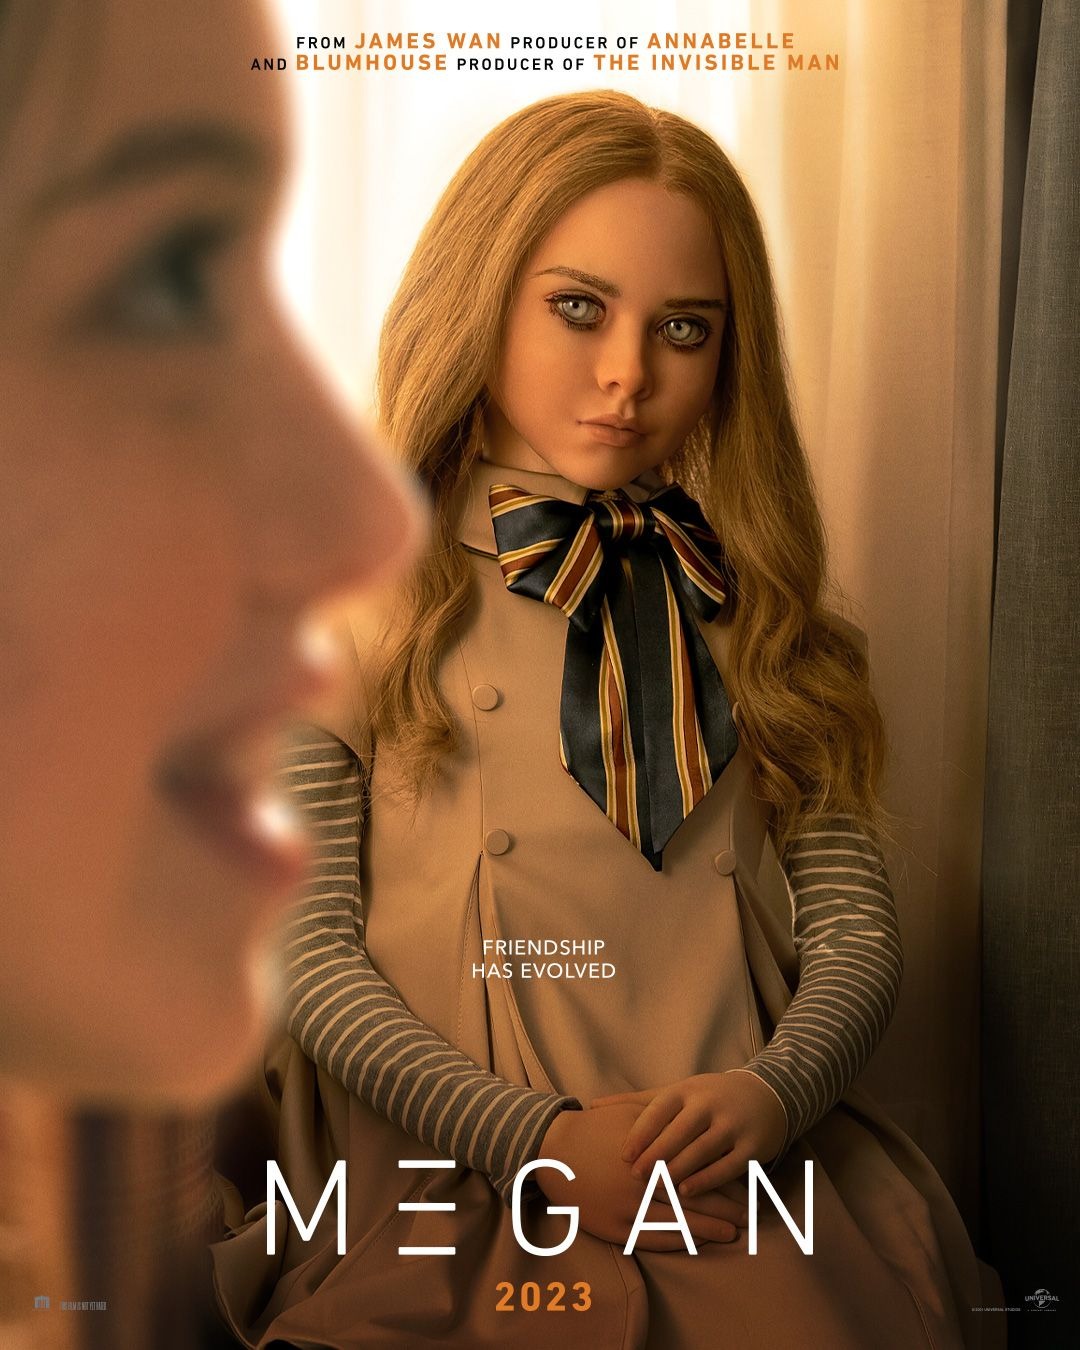 'M3GAN' - Le film d'horreur produit par James Wan obtient une affiche troublante Megan